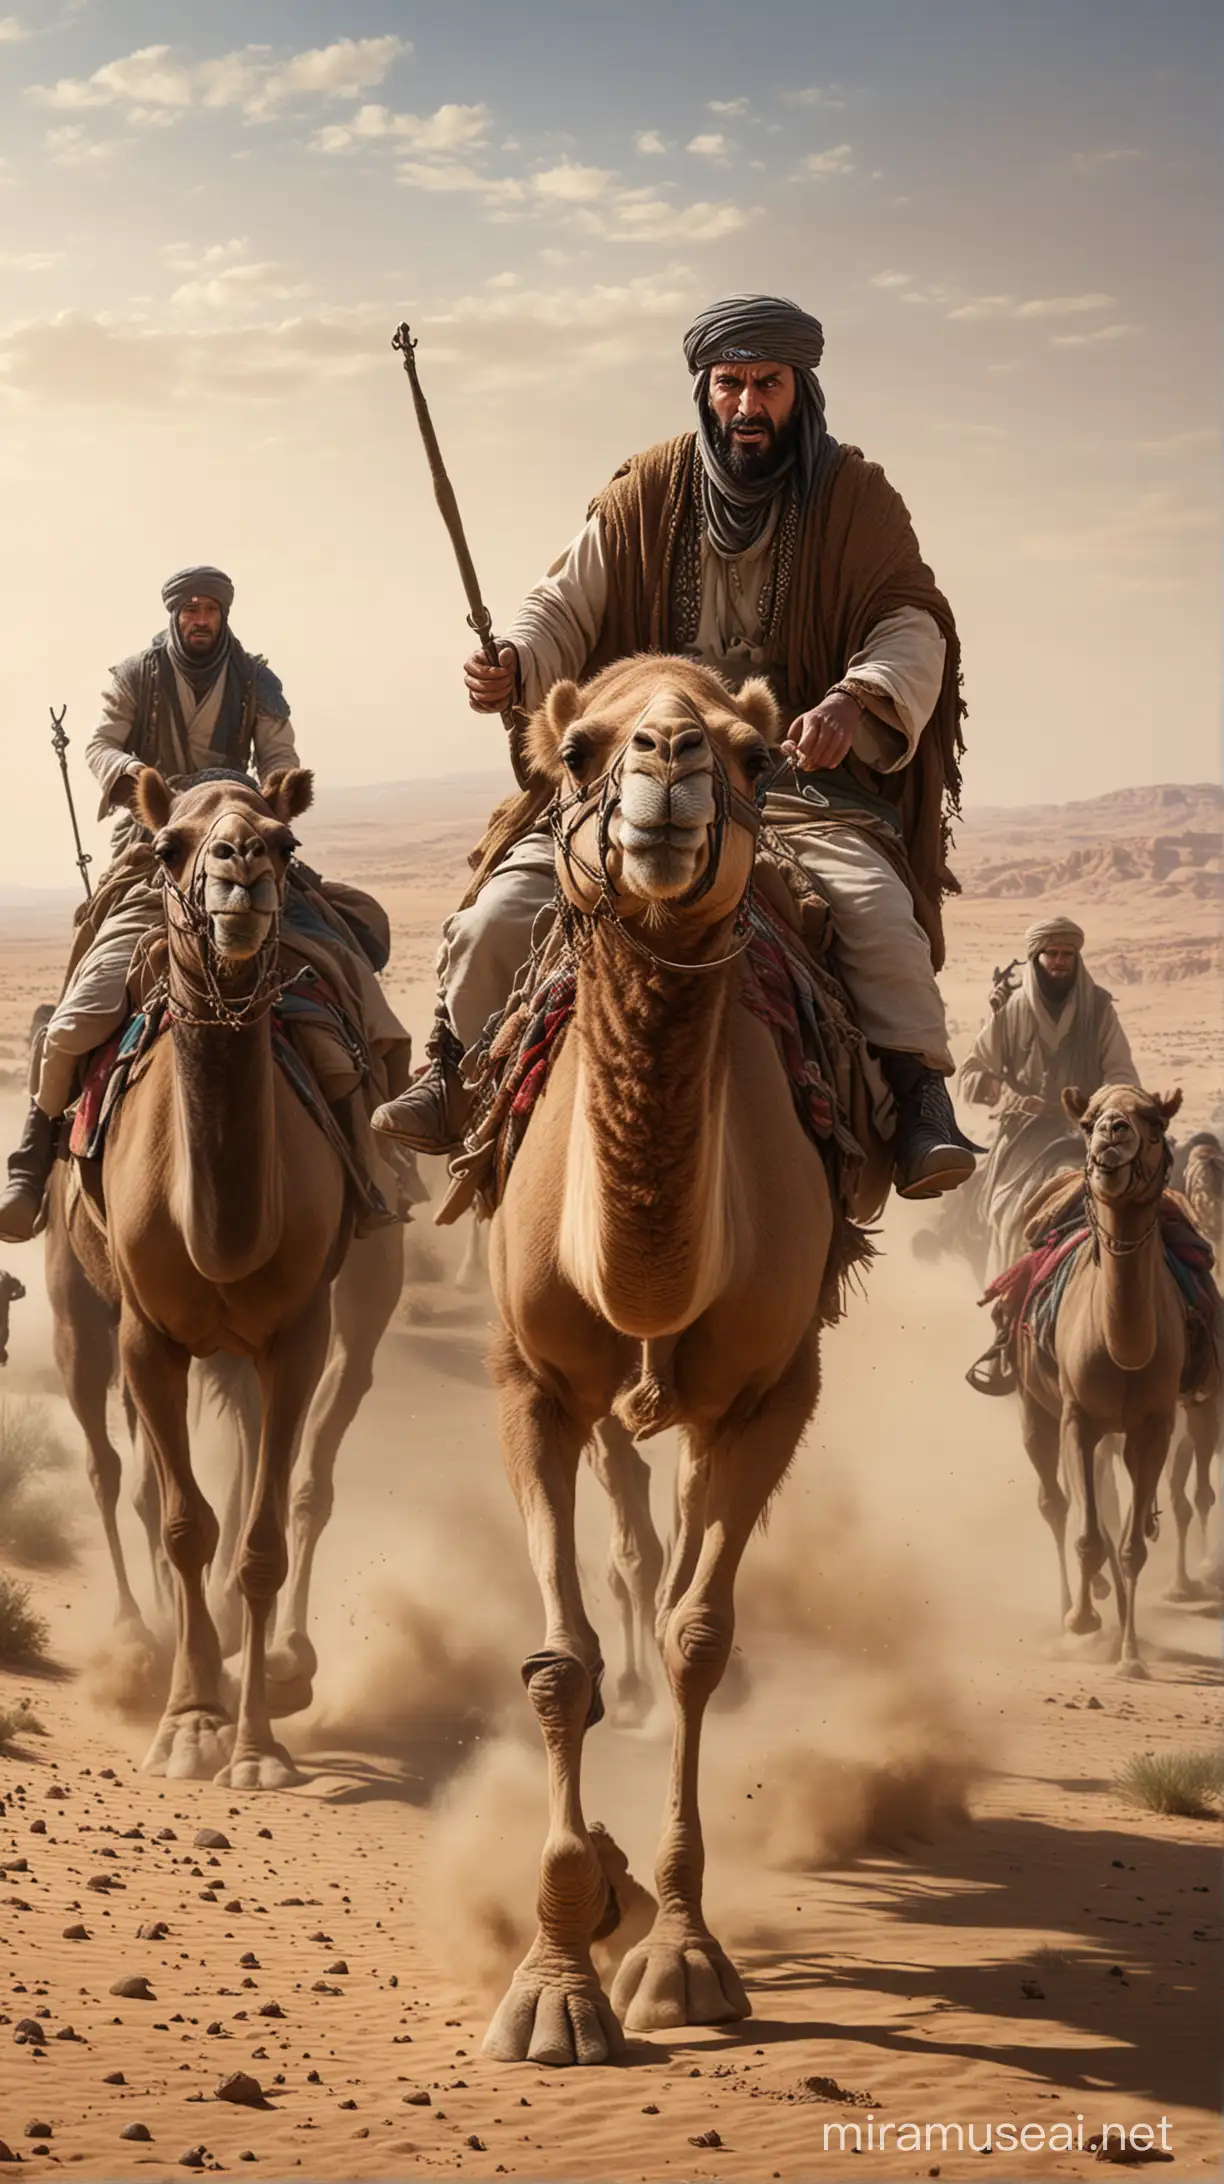 Saladin Escapes on Camel Baldwins Forces Pursue Hyper Realistic Art